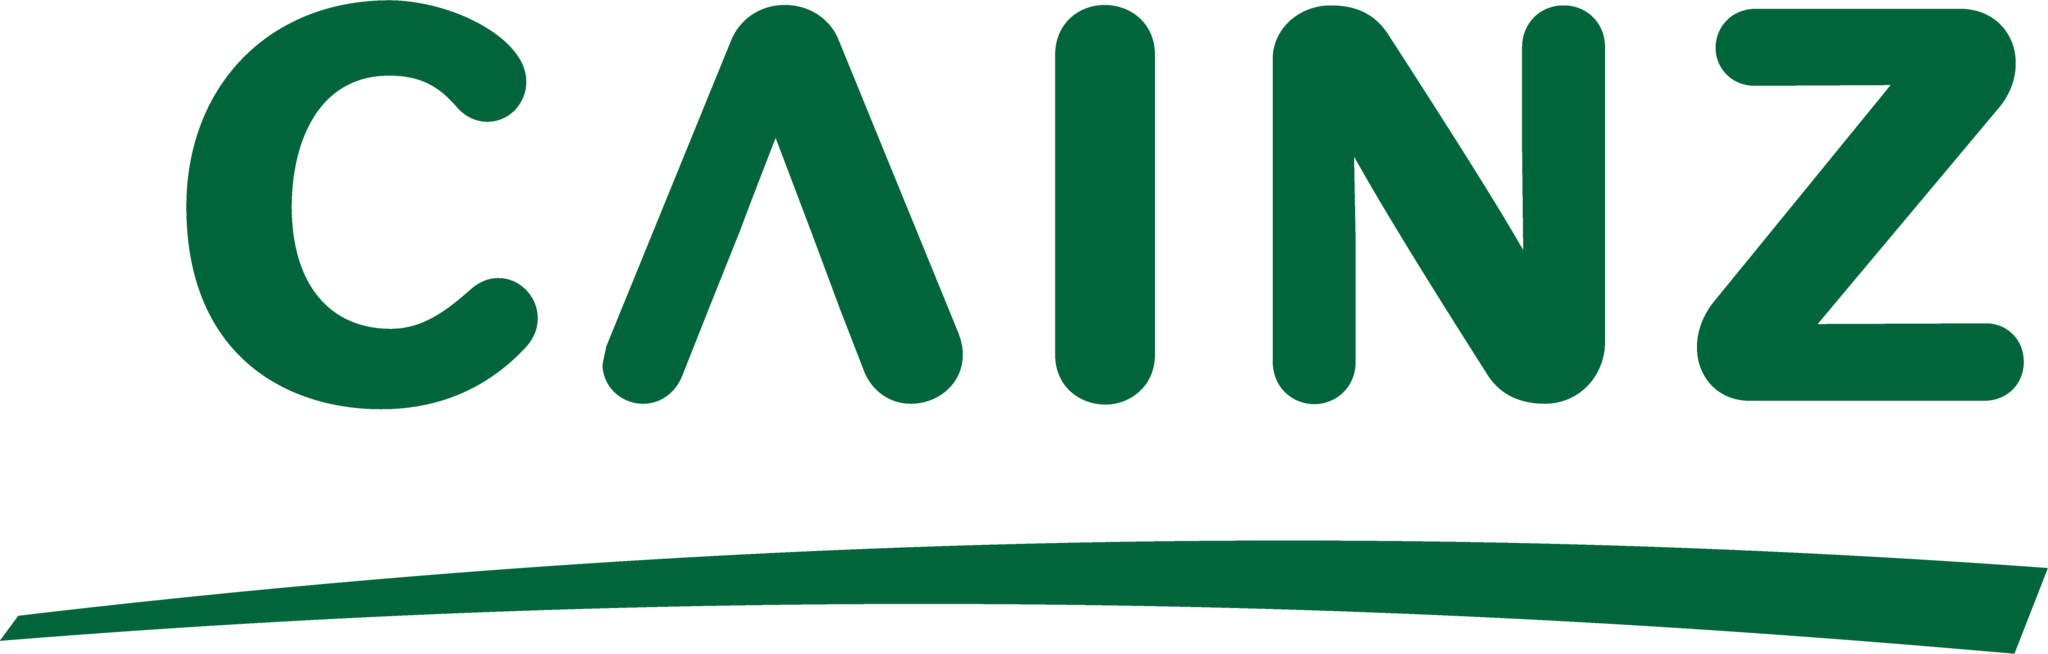 cainz-logo